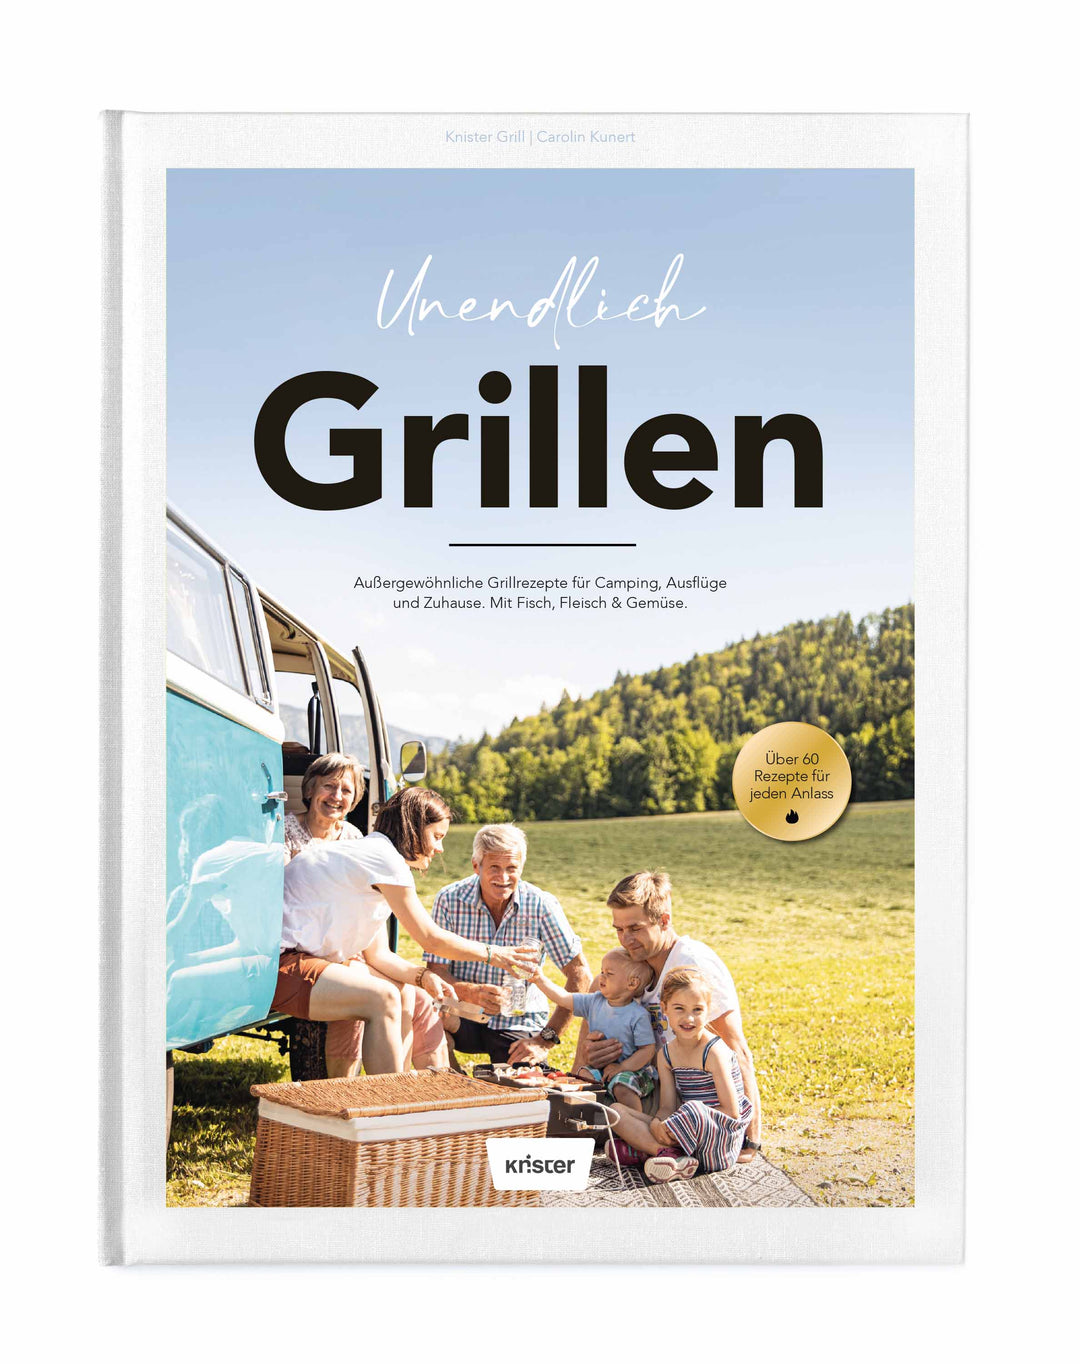 Knister Grill Small + 4er Set Grillspieße + Unendlich Grillen (Grillbuch)